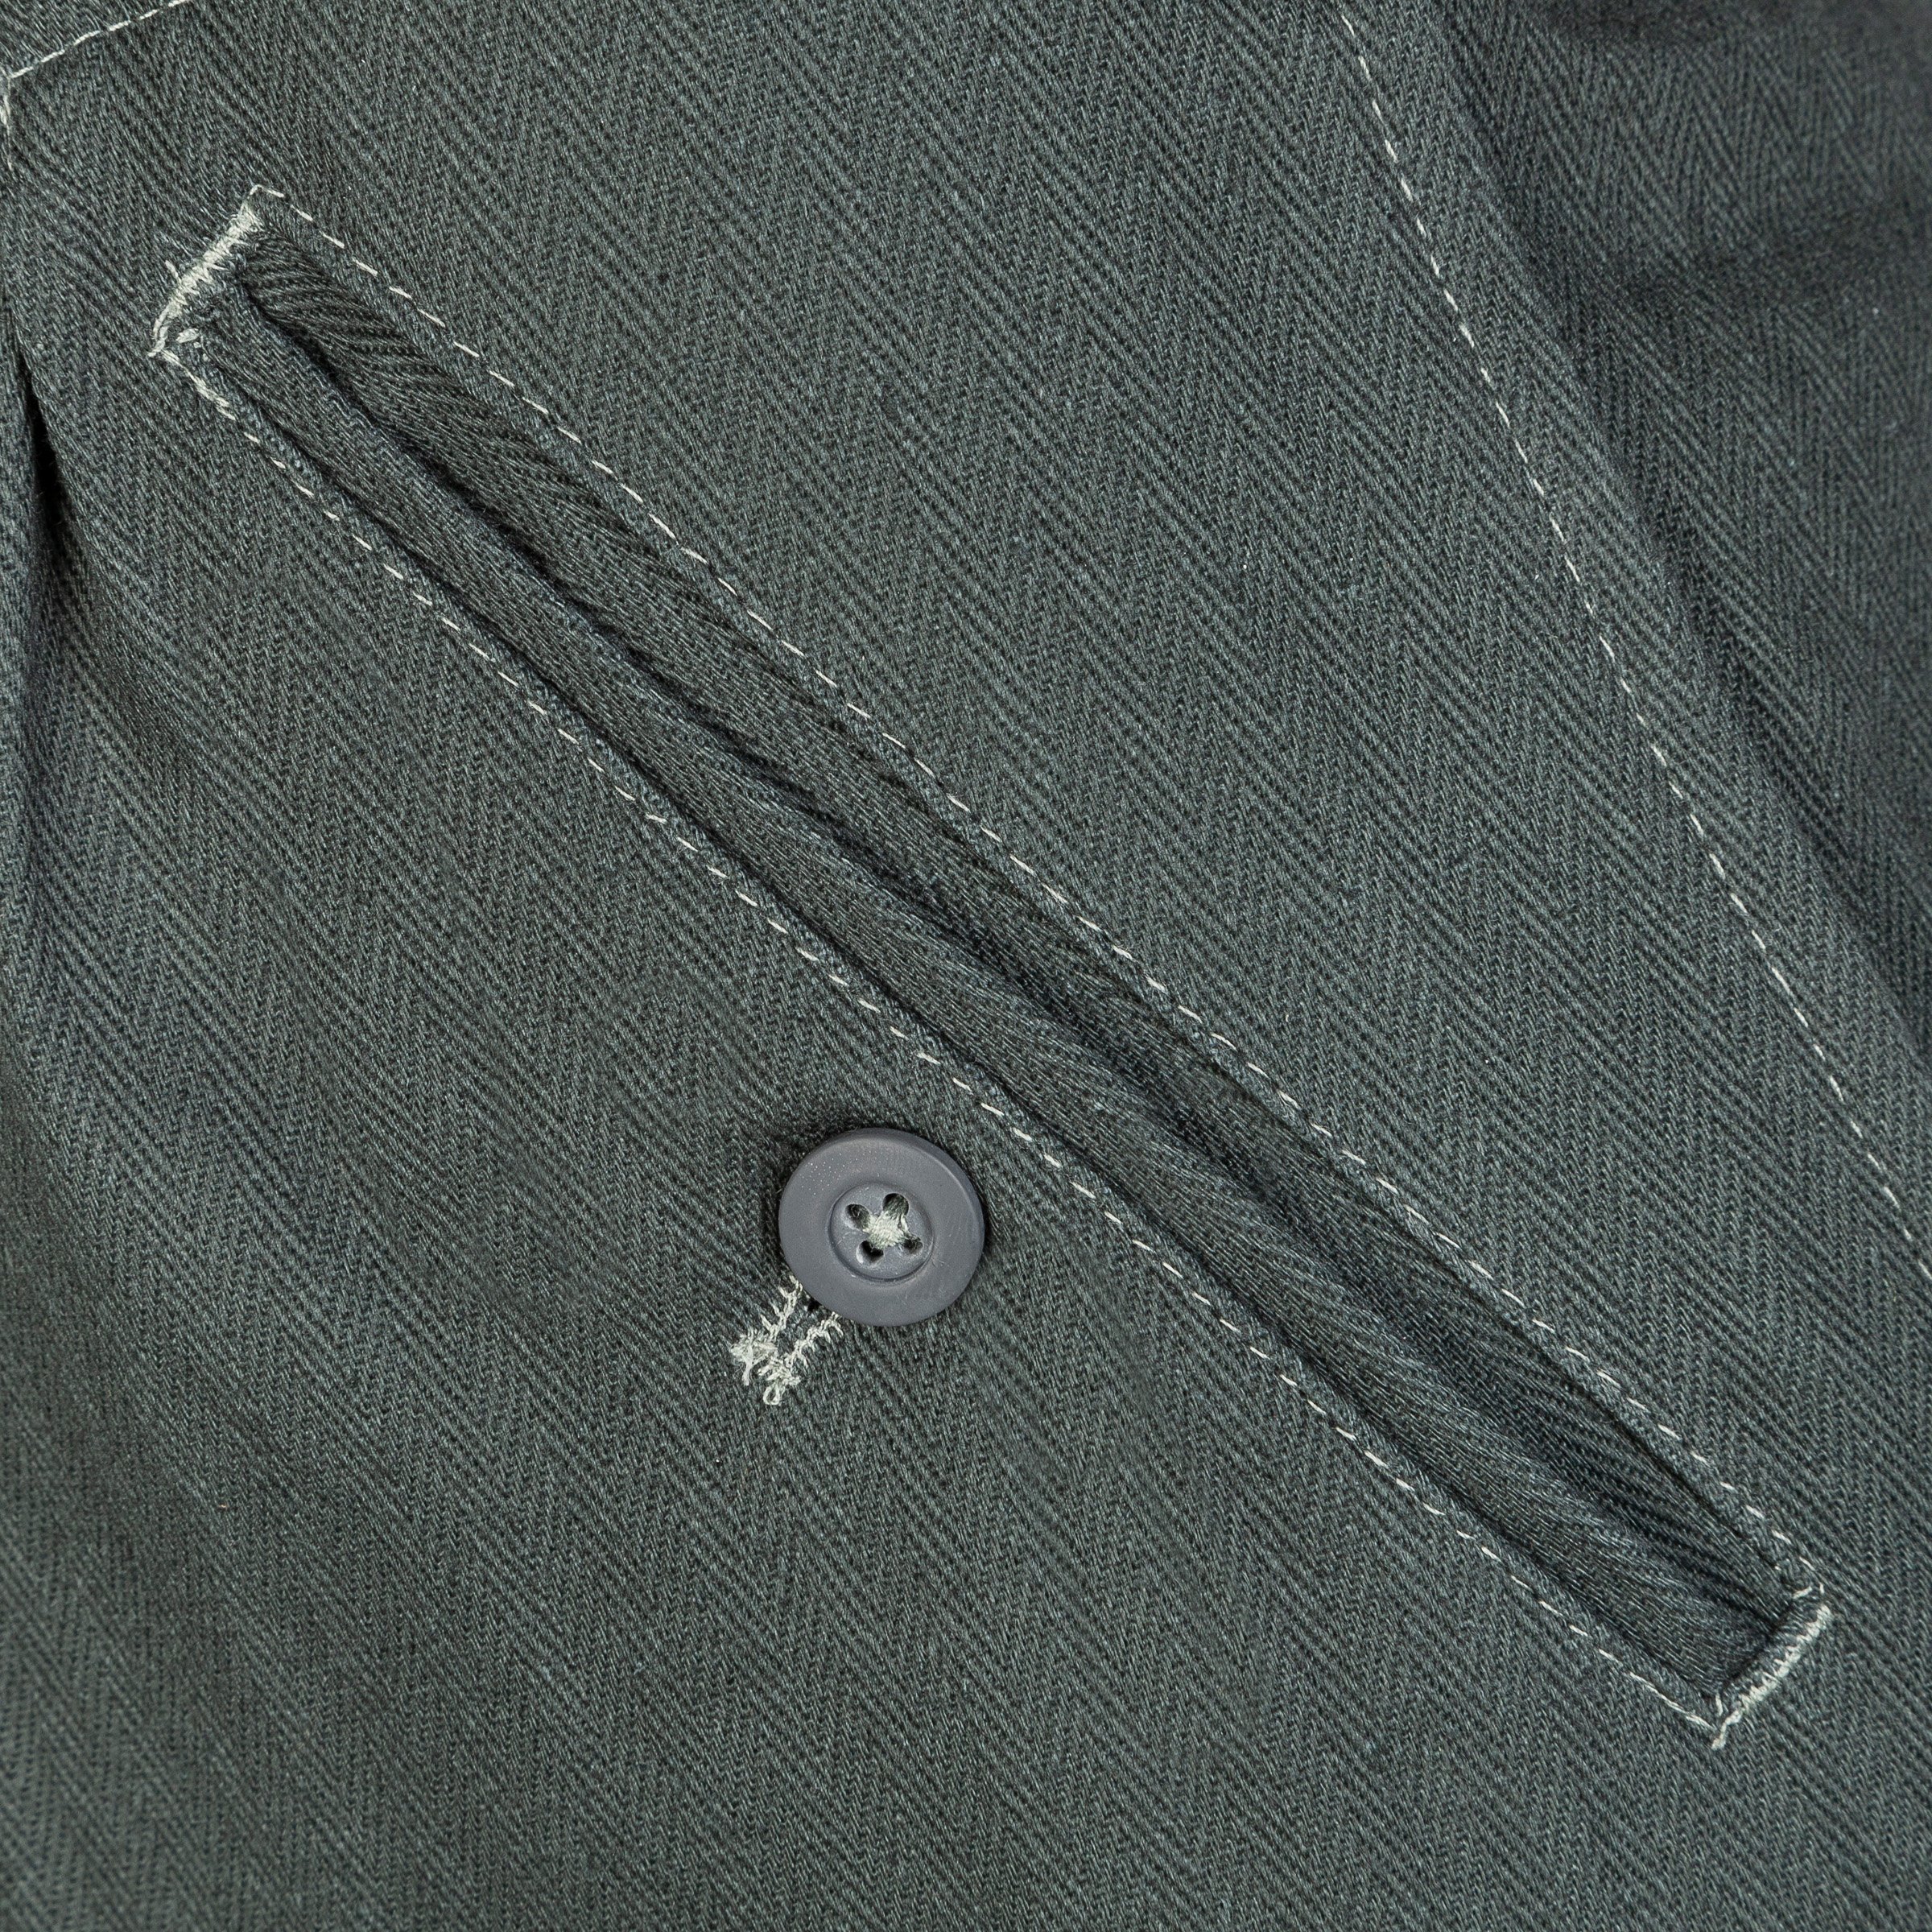 M43 Drillichhose - HBT trousers - repro by Sturm 48 48,75 € | Nestof.pl